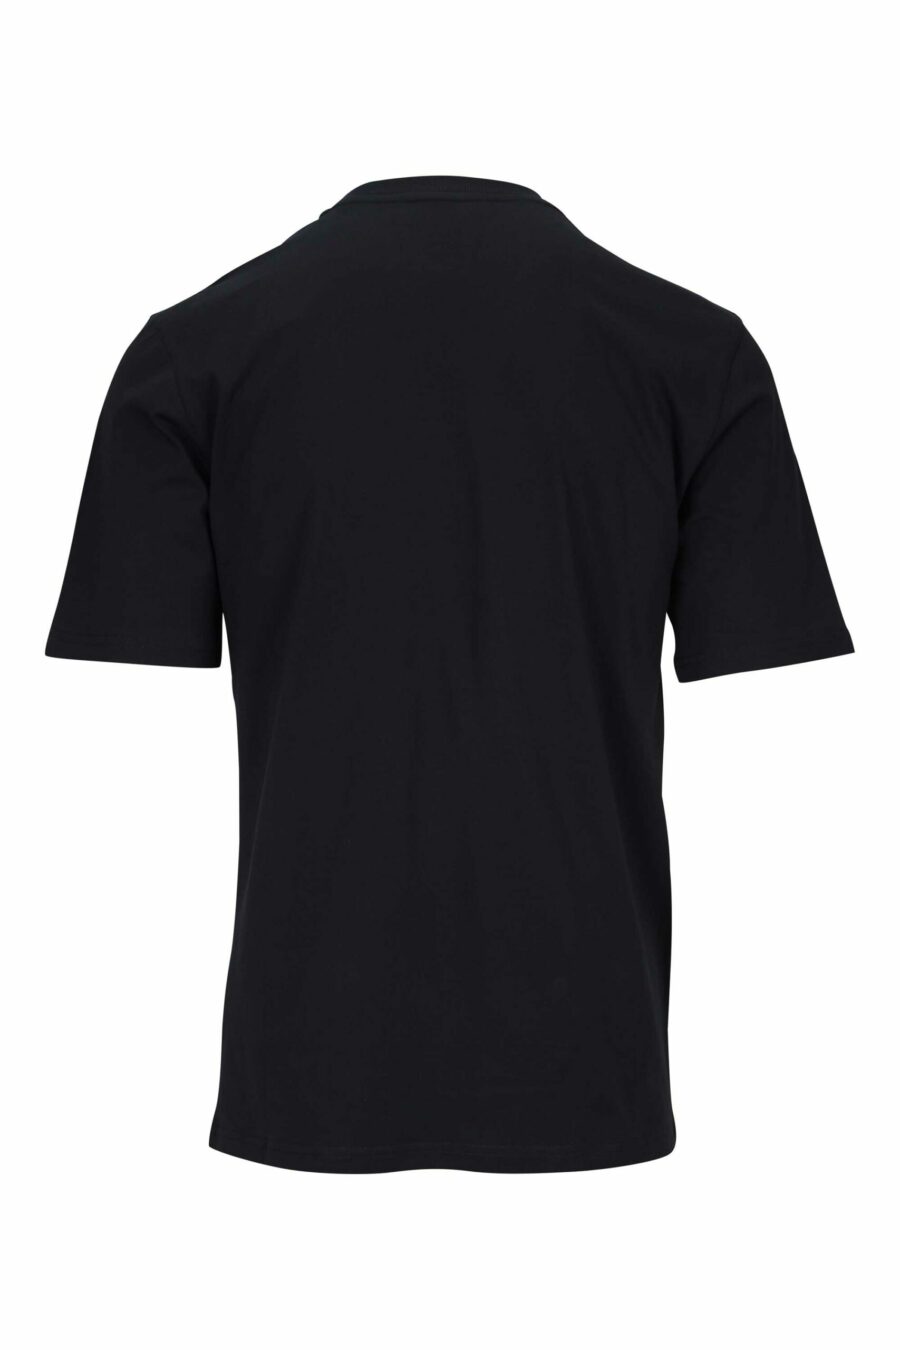 T-shirt preta com maxilogo de urso pontilhado monocromático - 667113455754 1 scaled